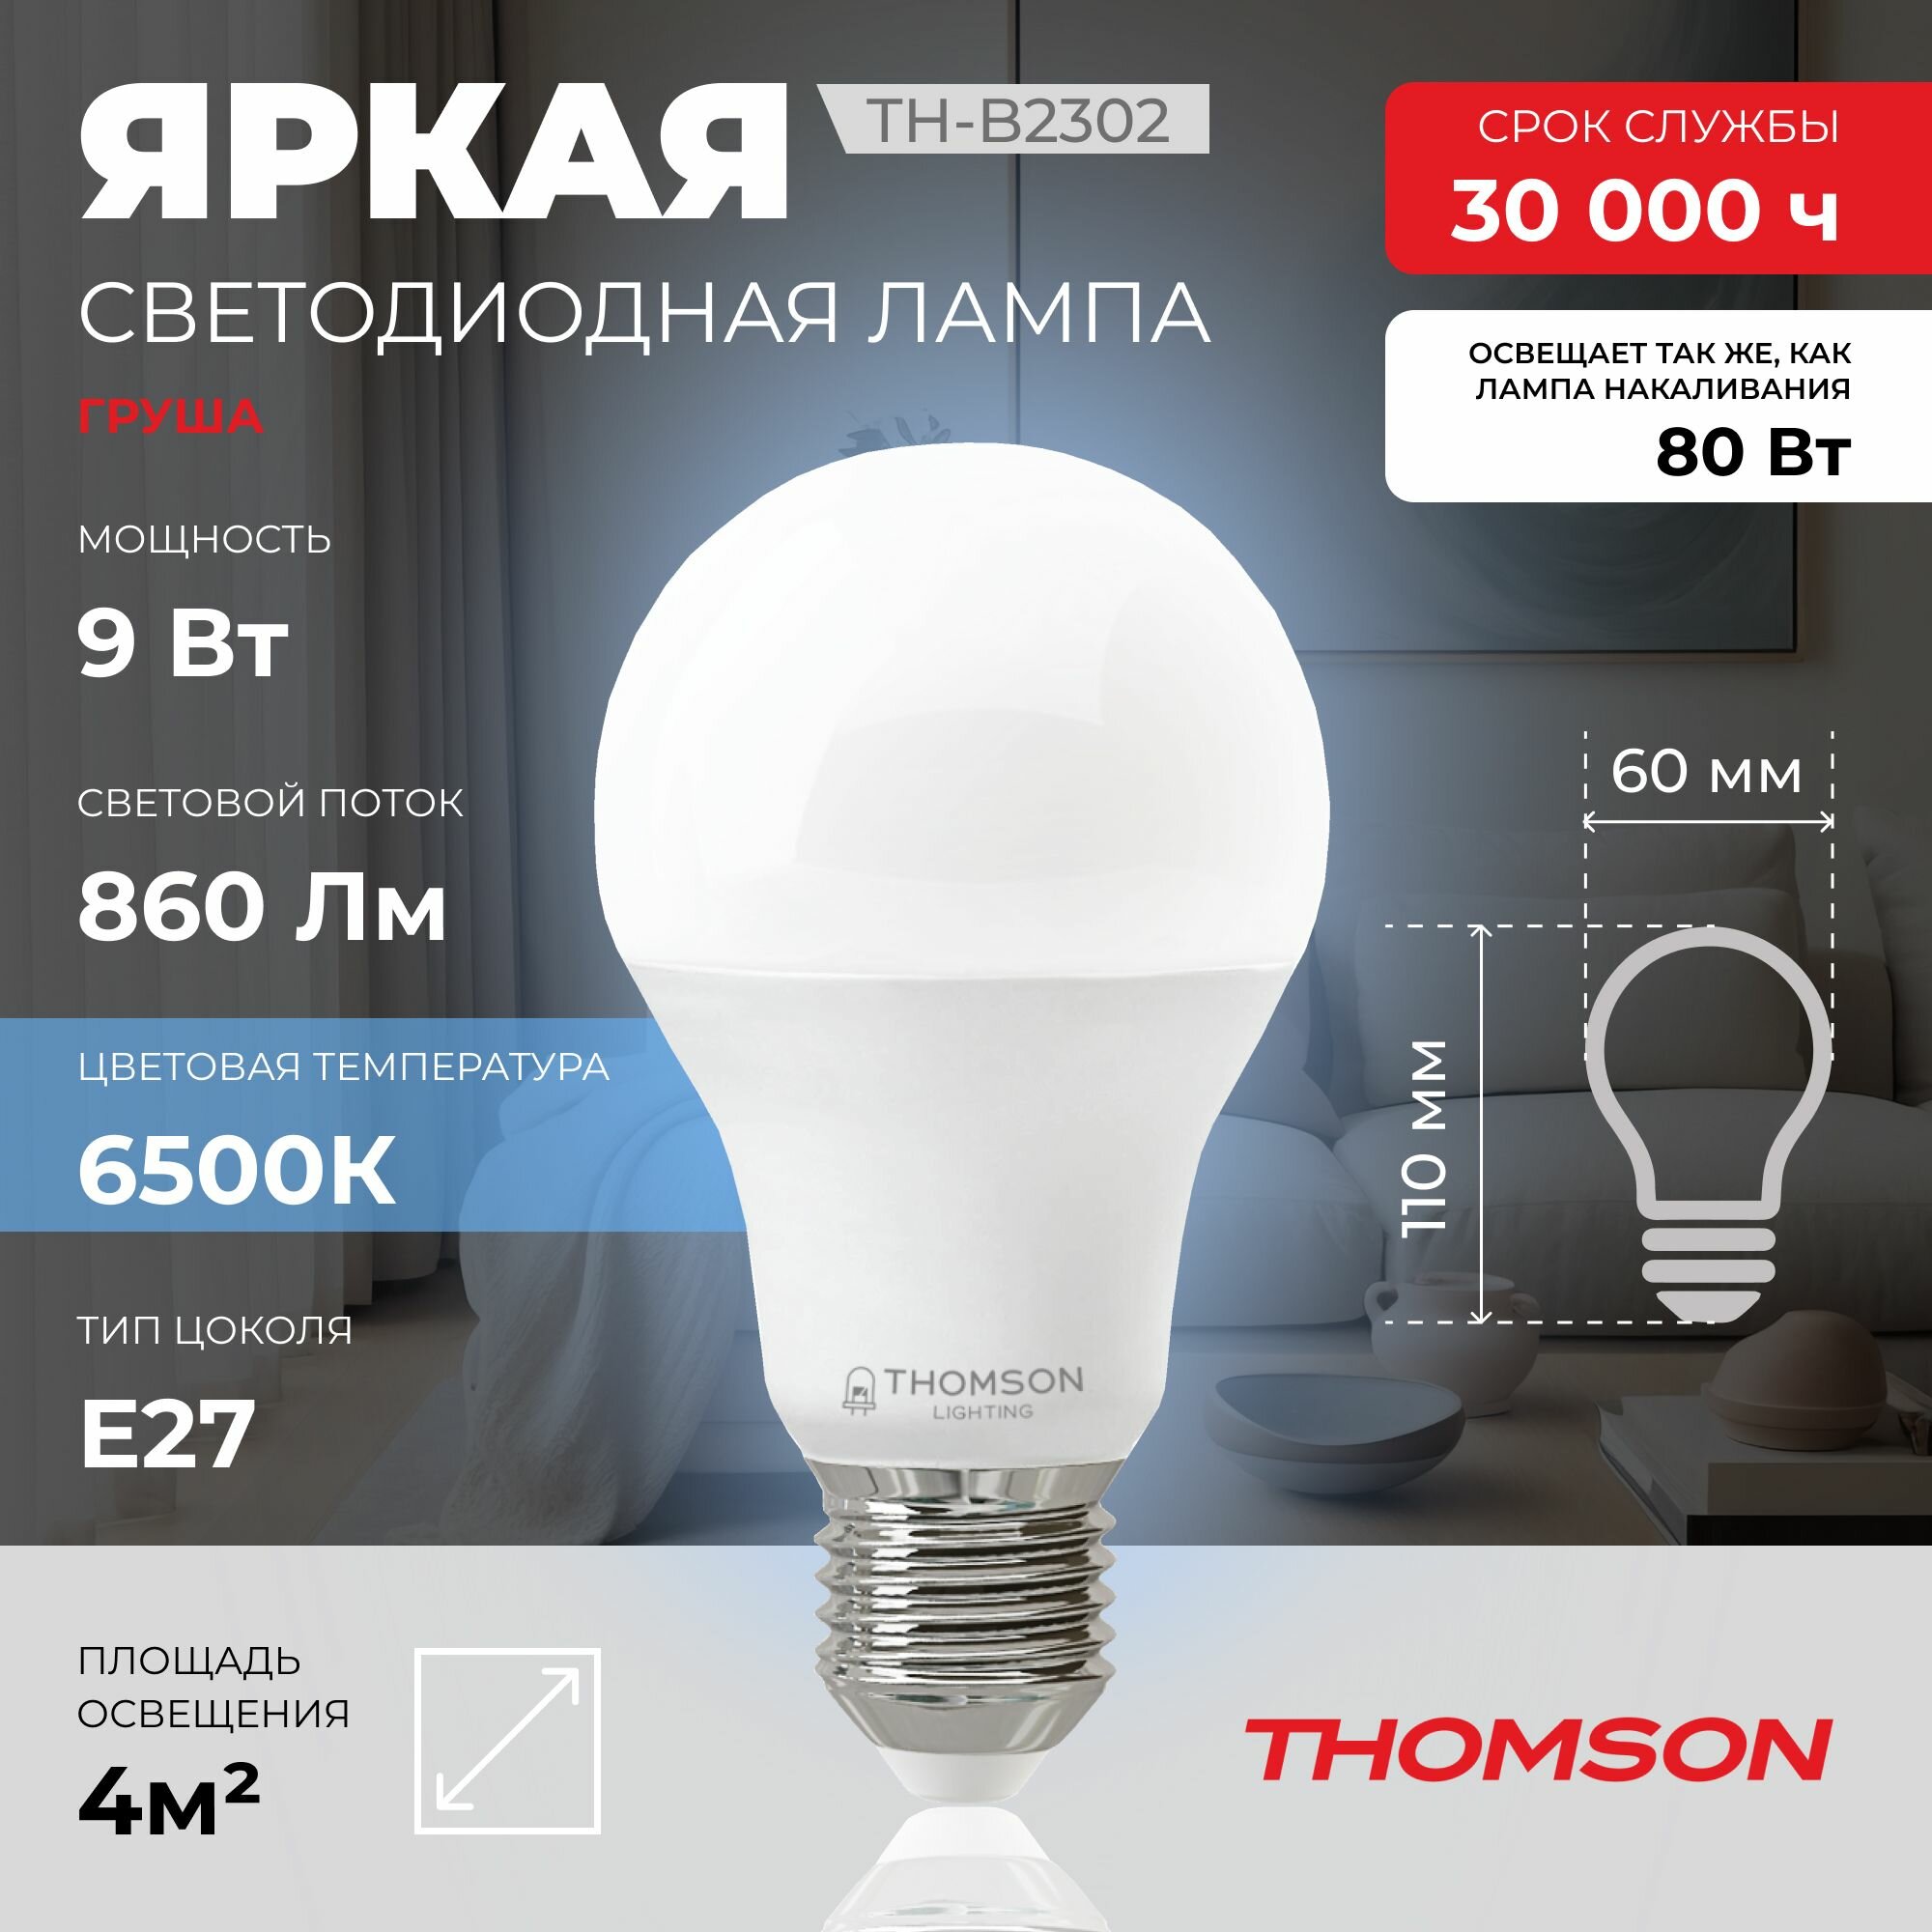 Лампочка Thomson TH-B2302 9 Вт, E27, 6500К, холодный белый свет